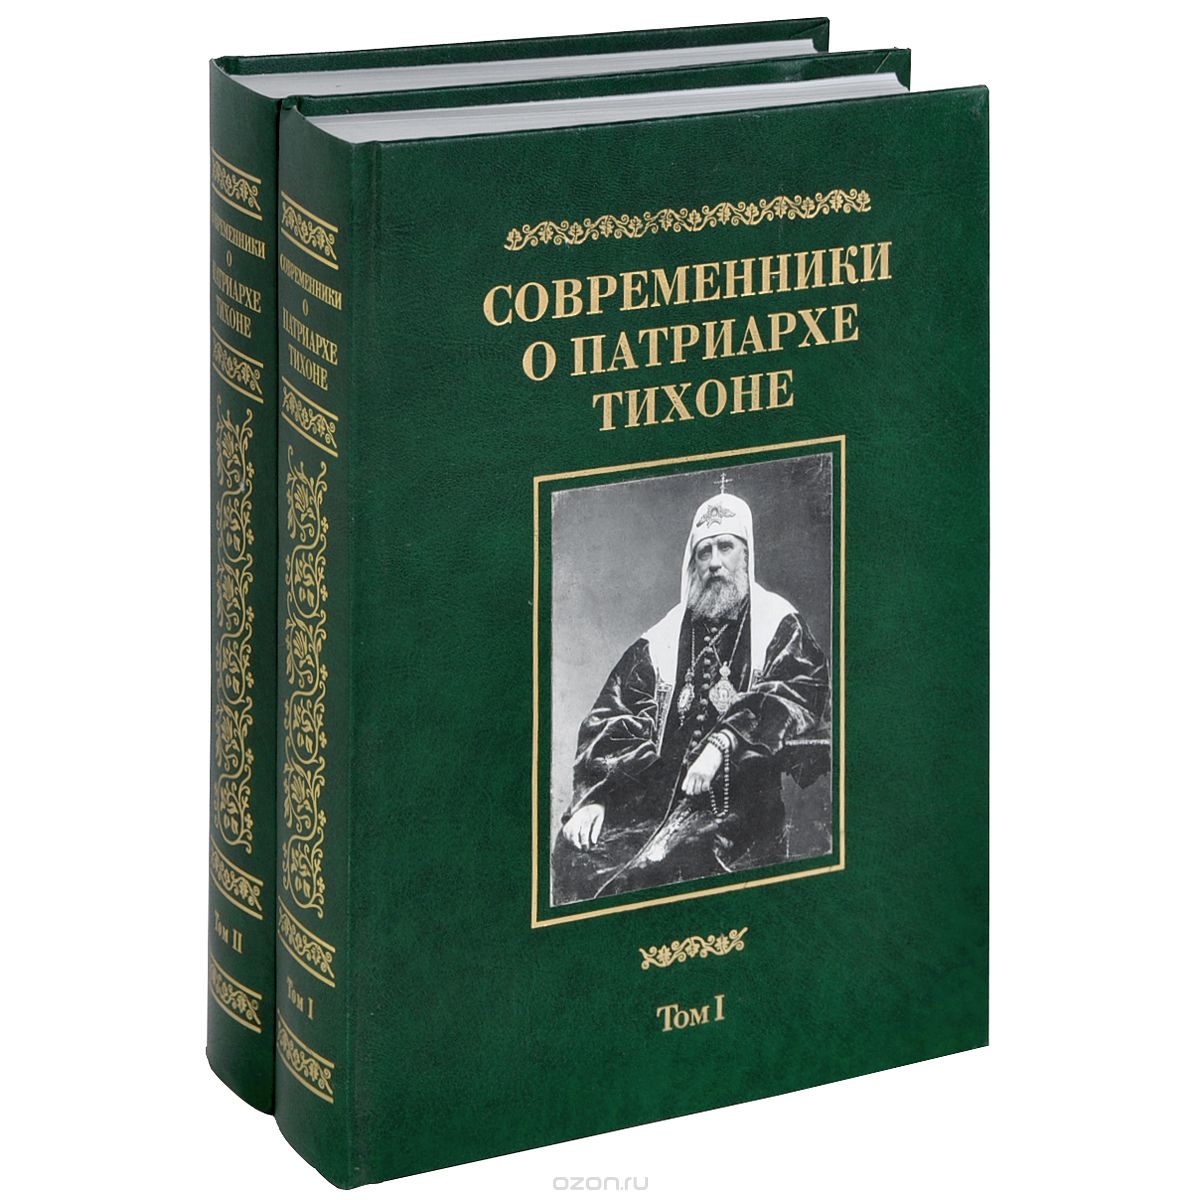 Современники о Патриархе Тихоне. В 2 томах (комплект)